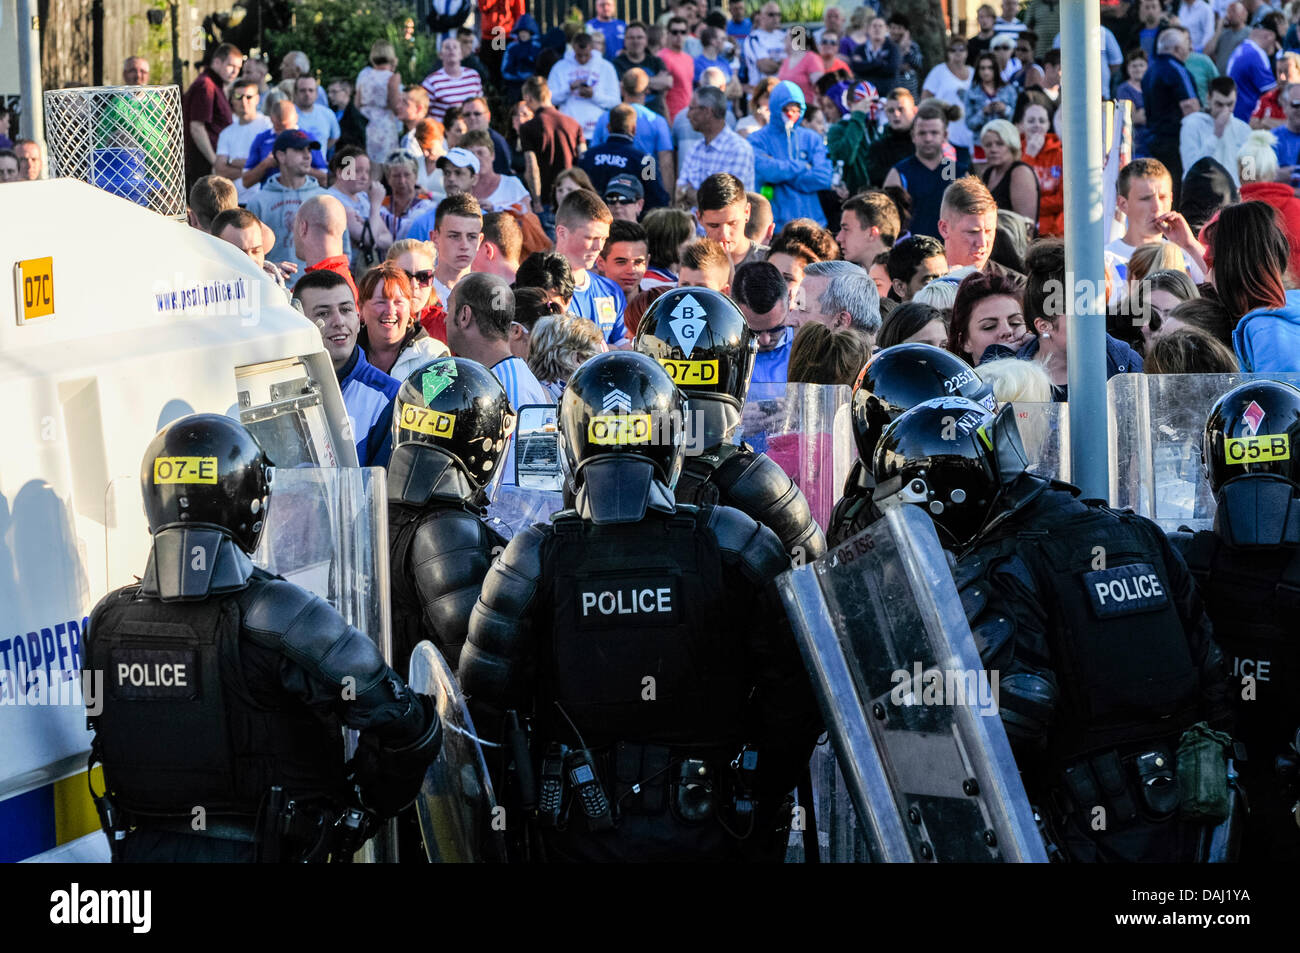 Belfast, Nordirland, 14. Juli 2013 - Polizei in Kampfmontur zurückhalten eine große Menschenmenge Credit: Stephen Barnes/Alamy Live News Stockfoto